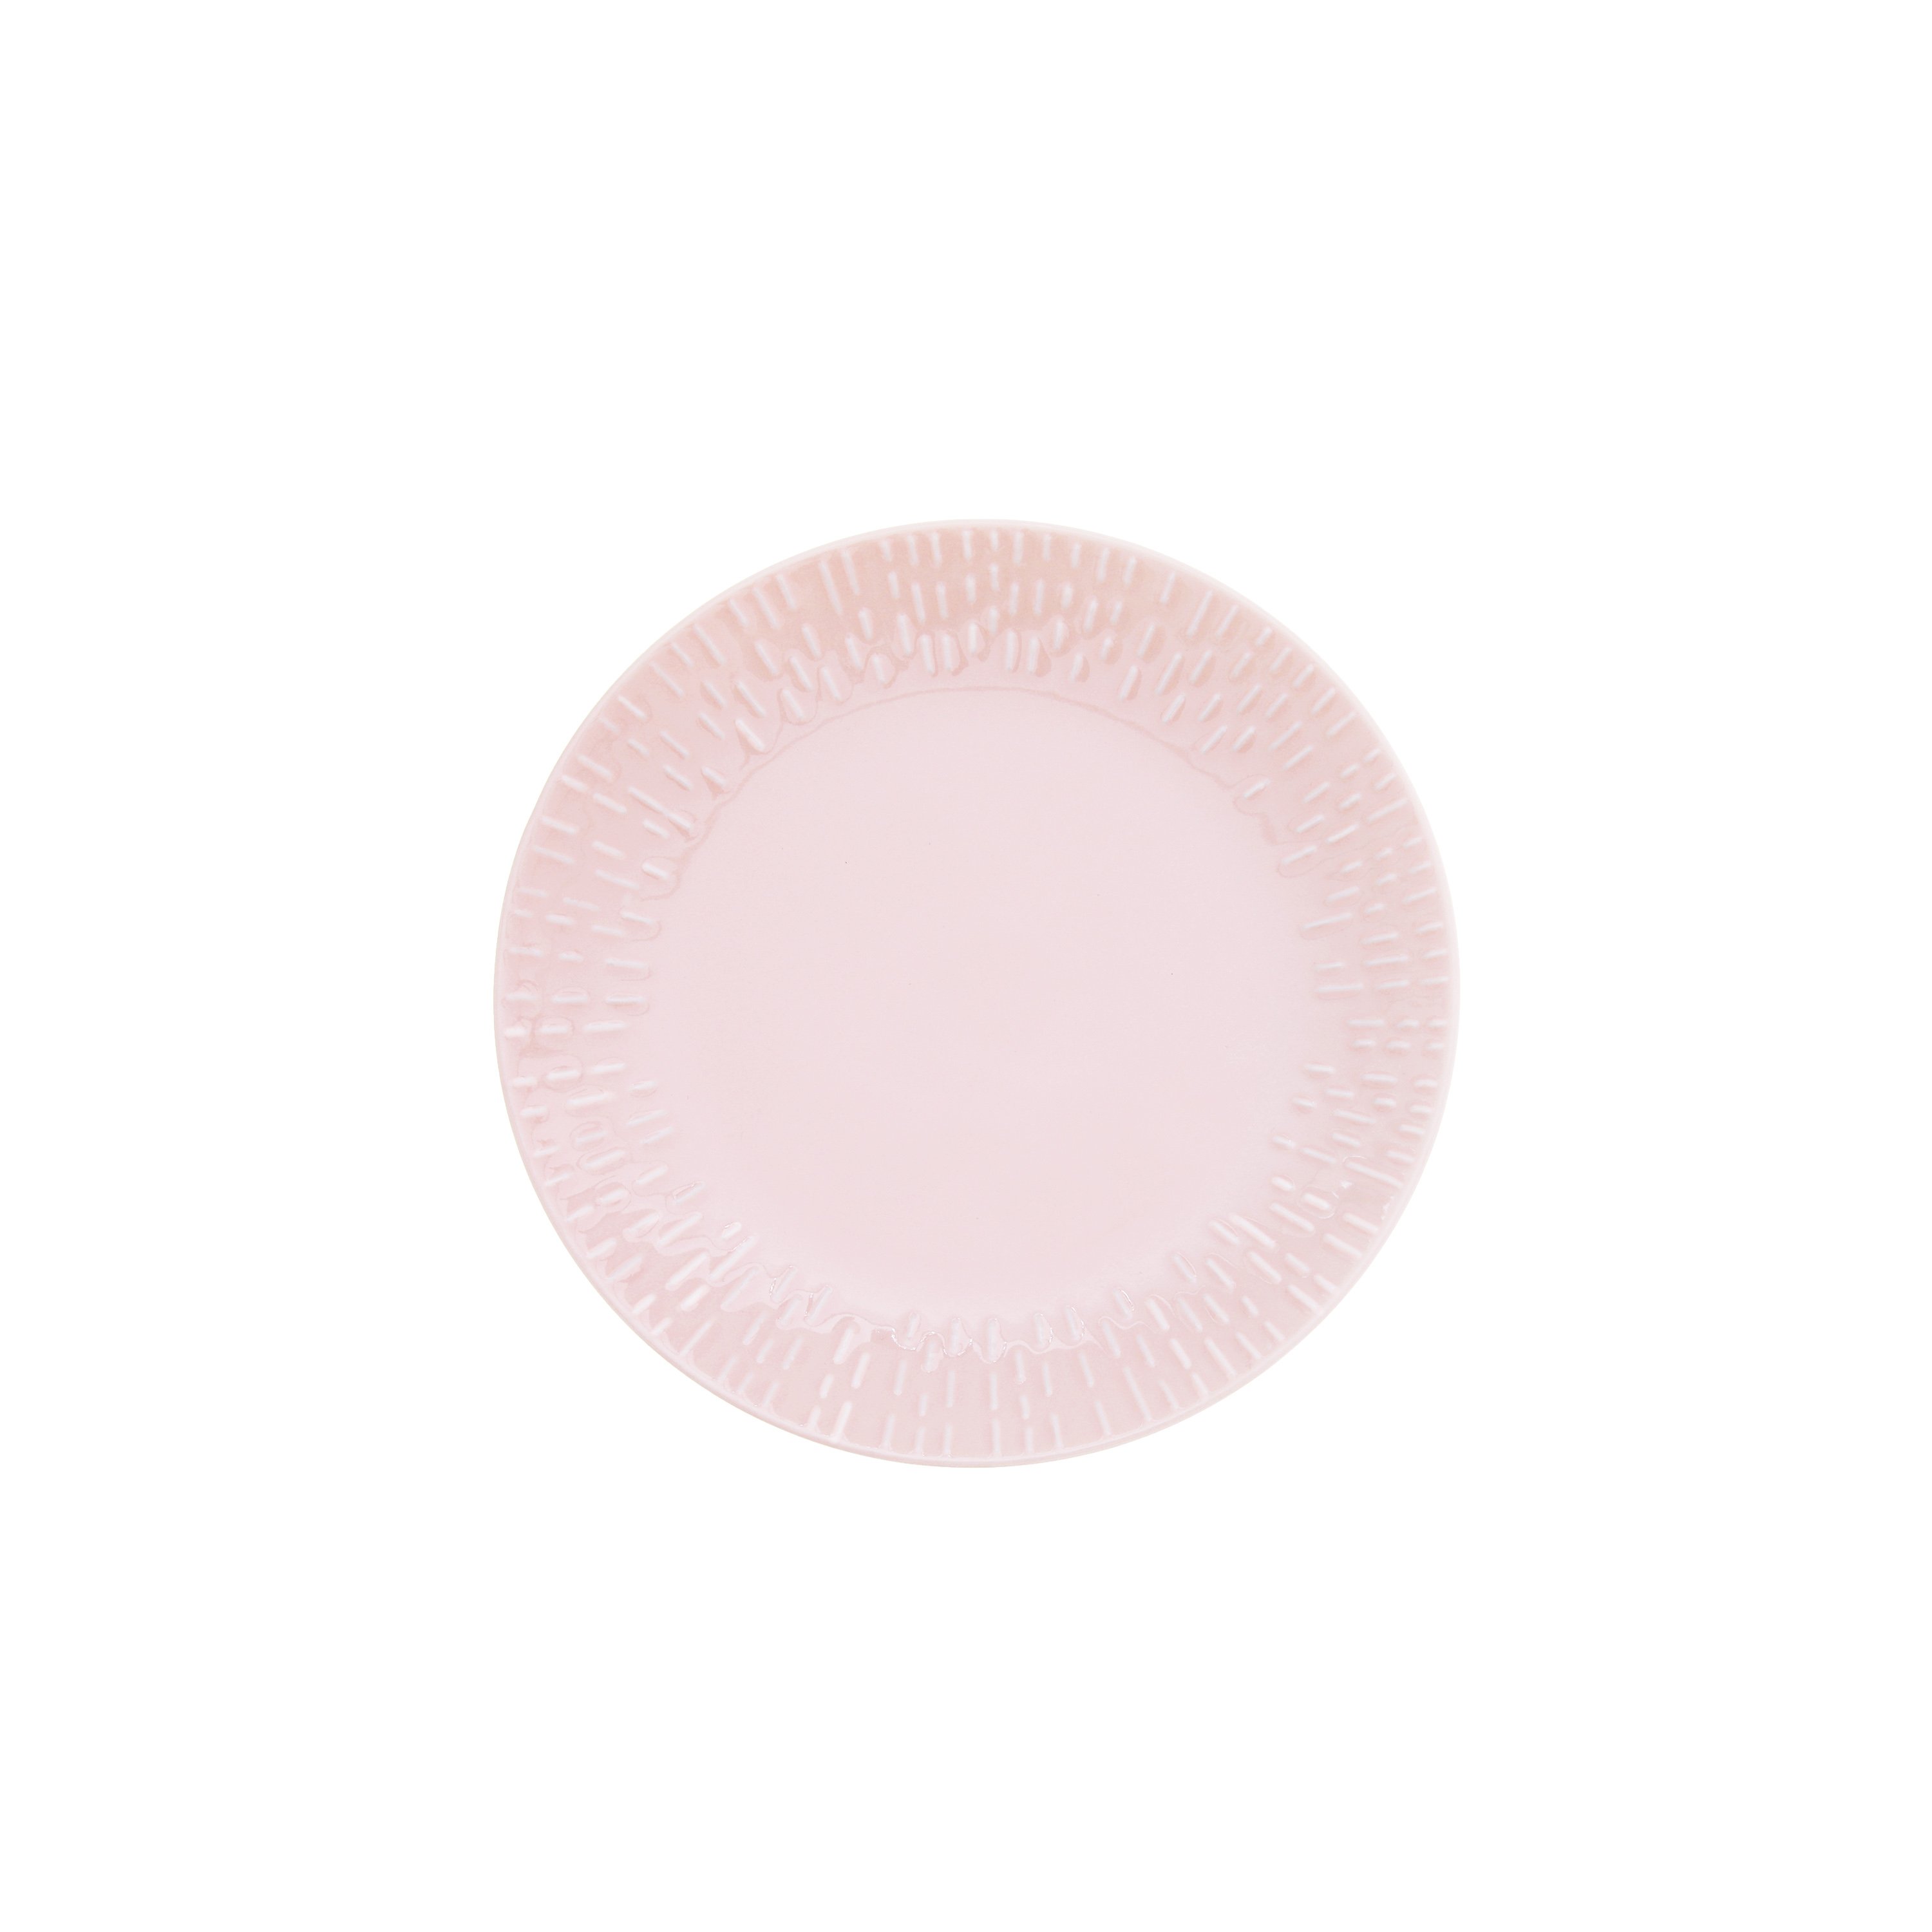 Aida - Life in Colour - Confetti - Candy floss dessert plate w/relief porcelain (13342) - Hjemme og kjøkken